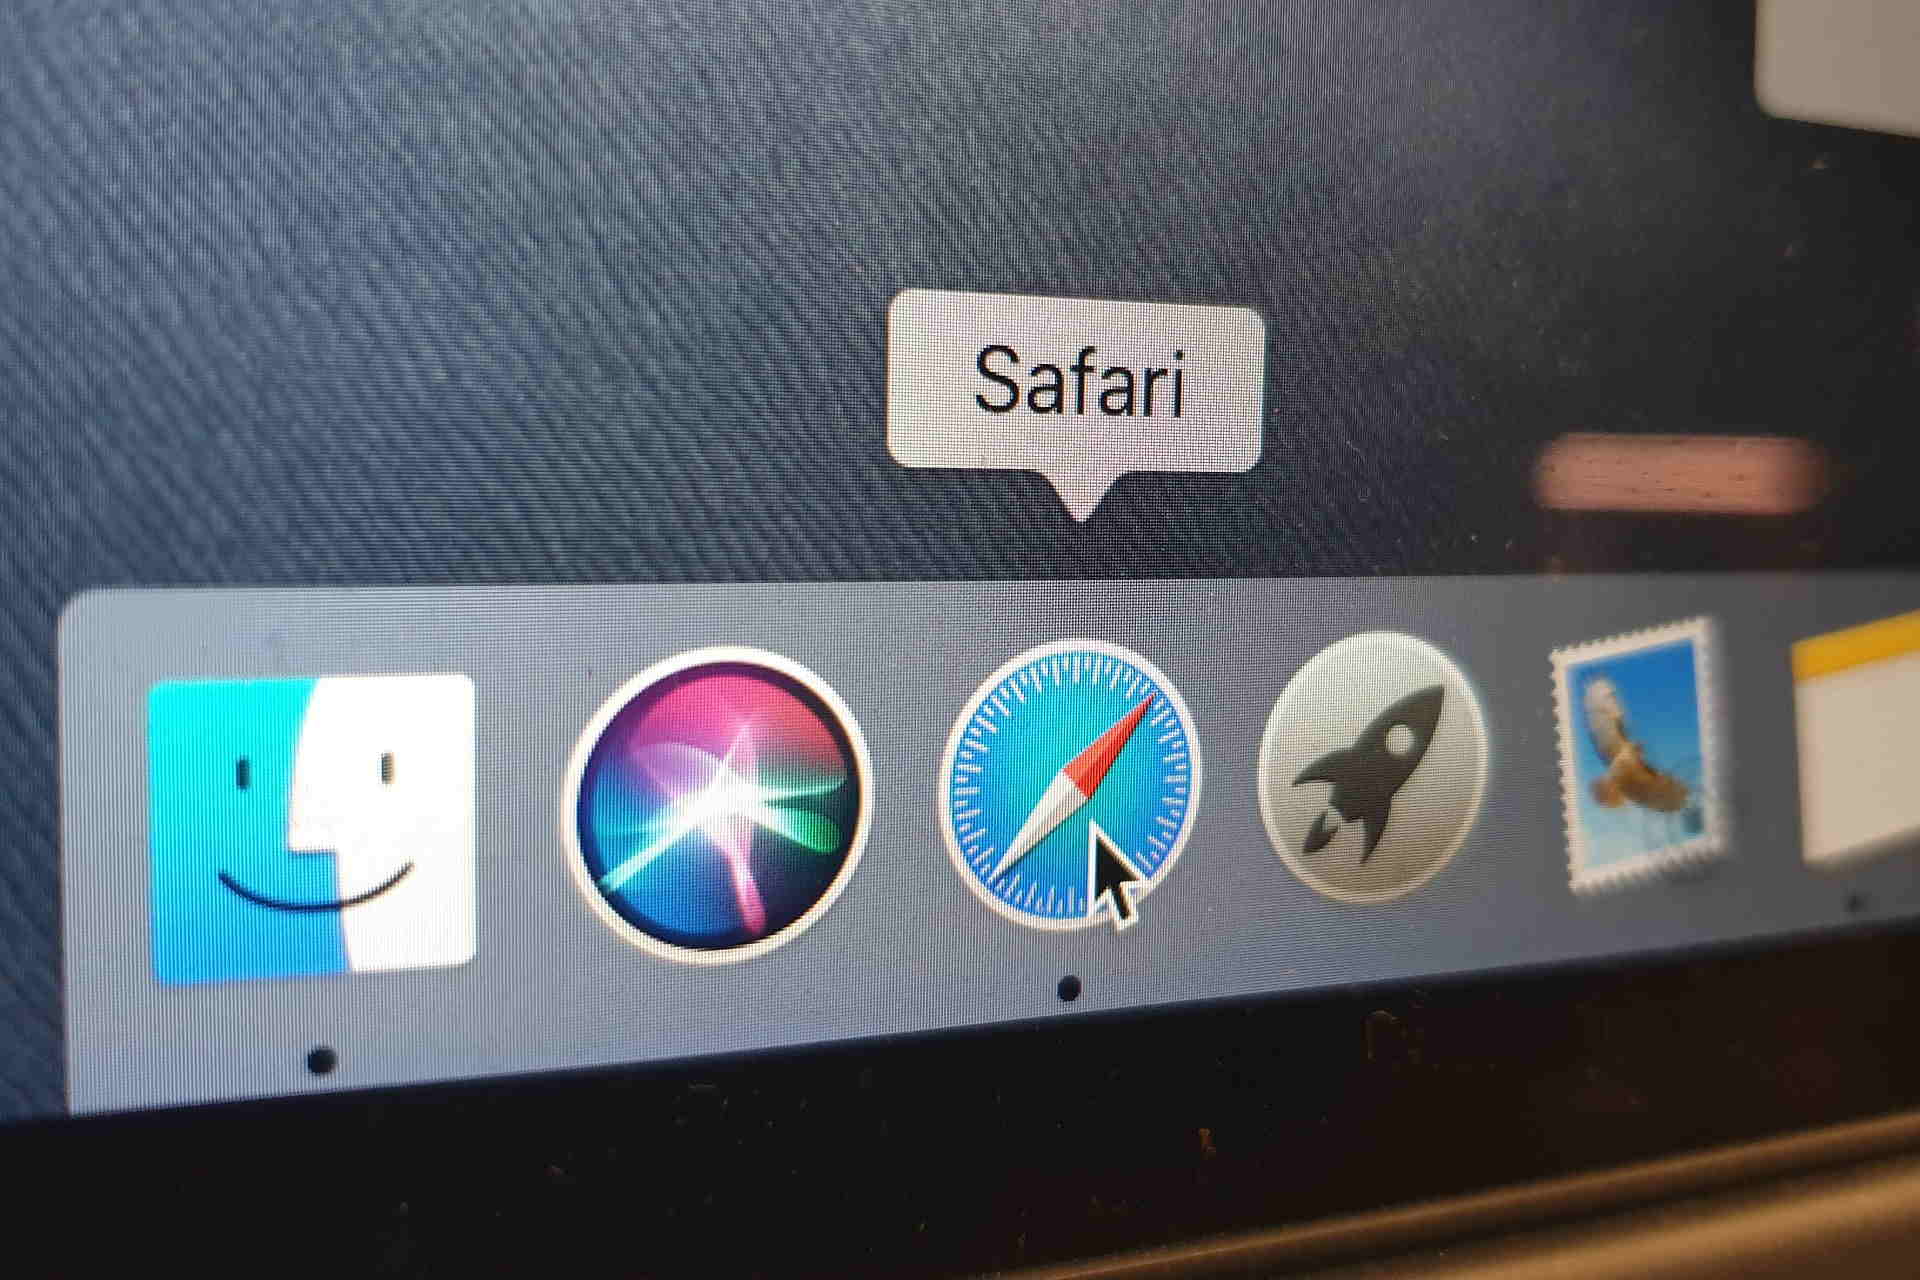 latest safari version for mac